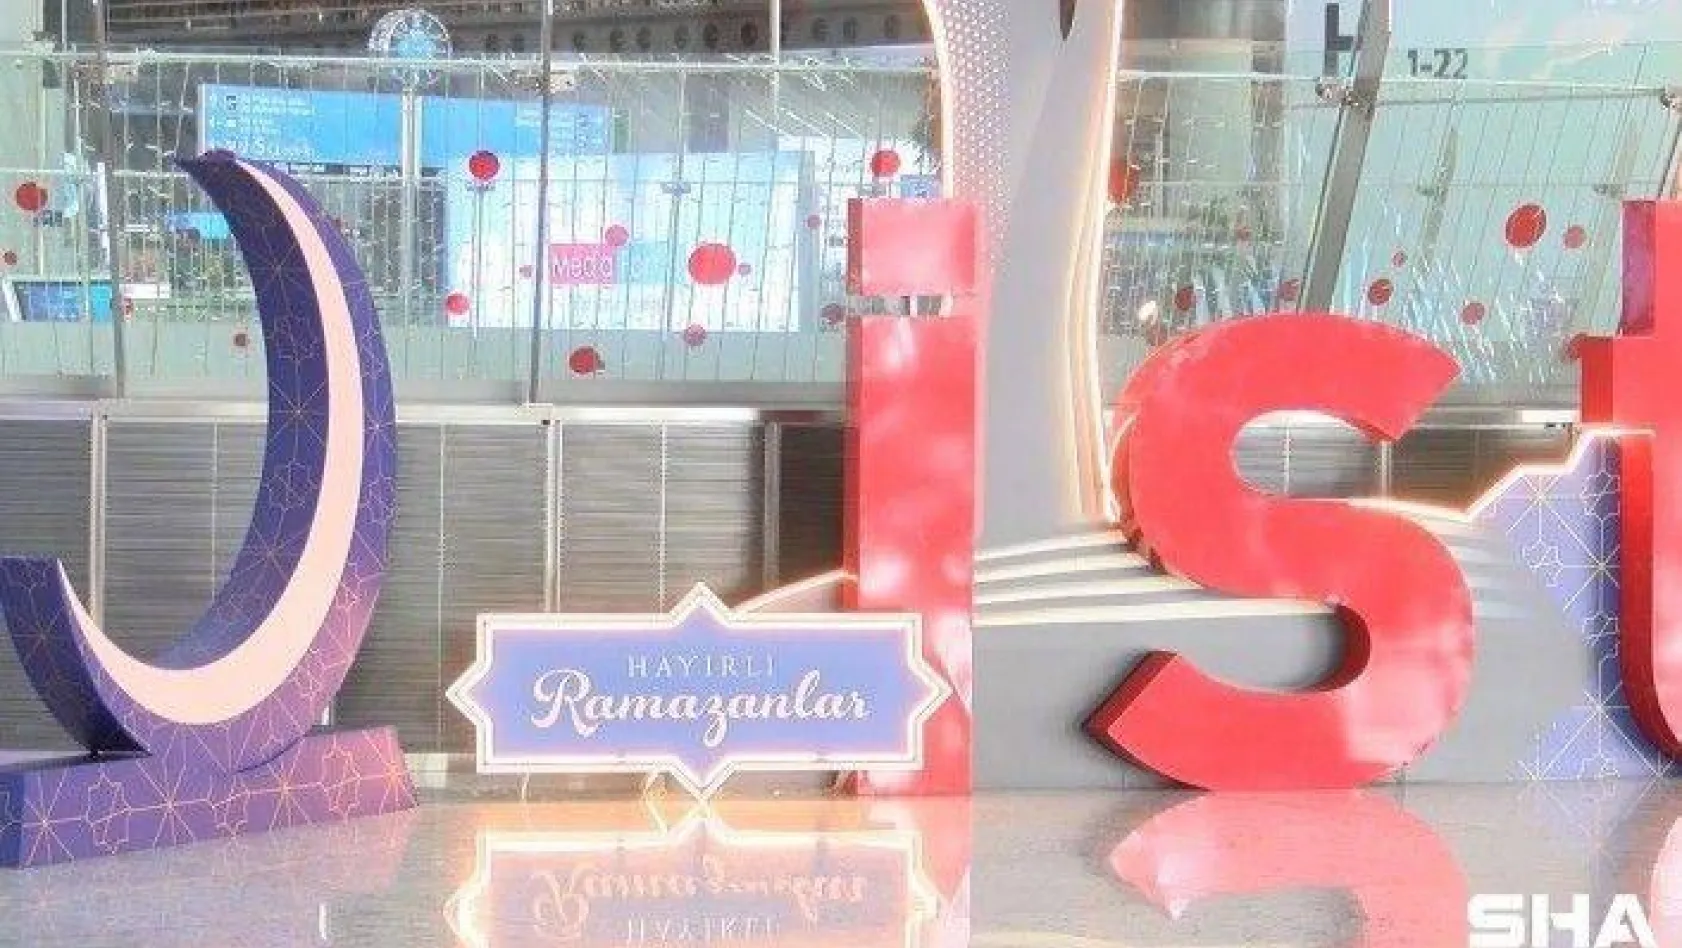 İstanbul Havalimanı, Ramazan ayını yolcuları ile kutlamaya hazırlanıyor